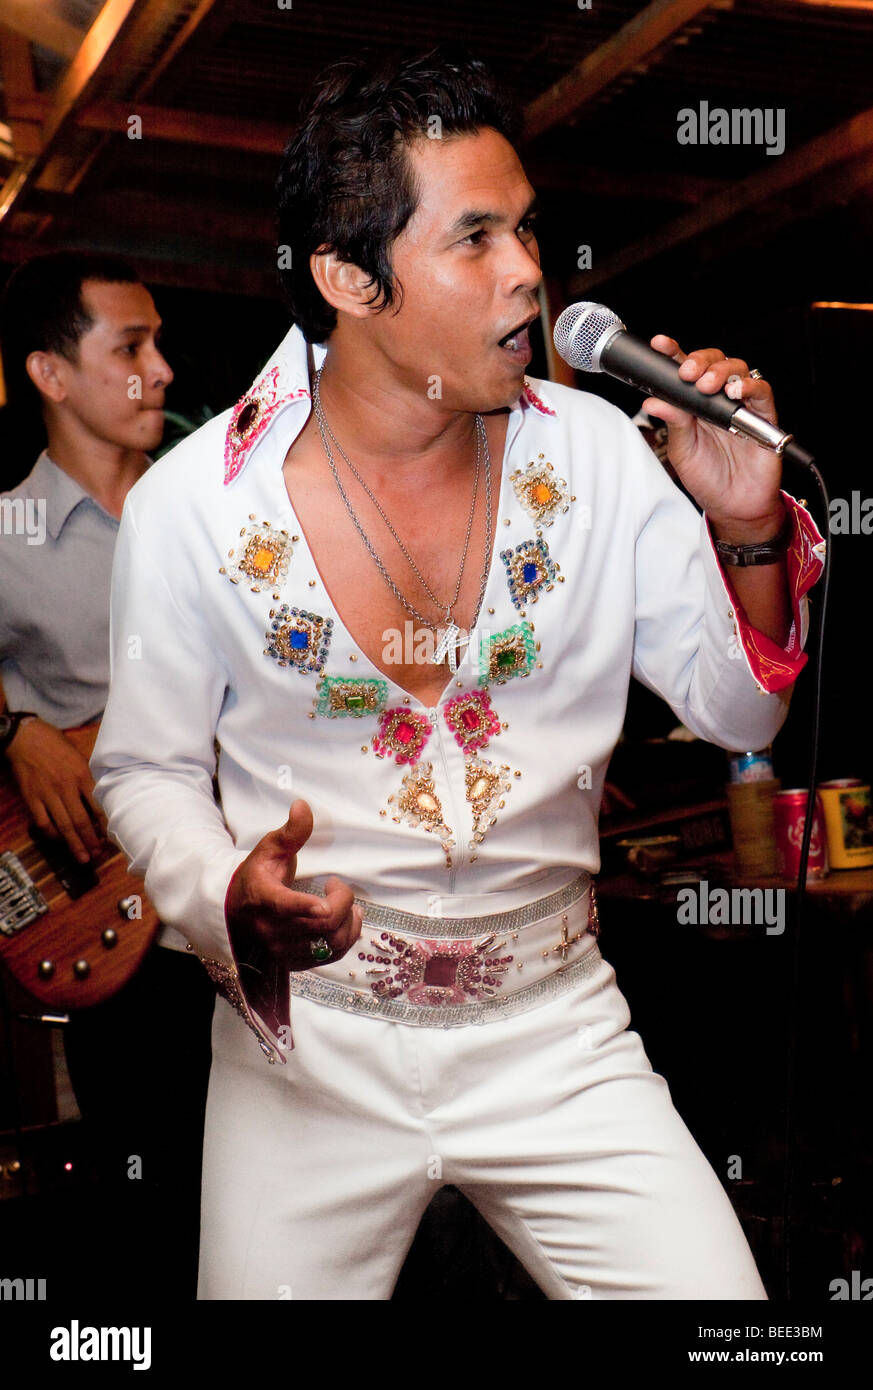 Sosia di Elvis su un party Isola di Phuket Thailandia del sud sud-est asiatico Foto Stock